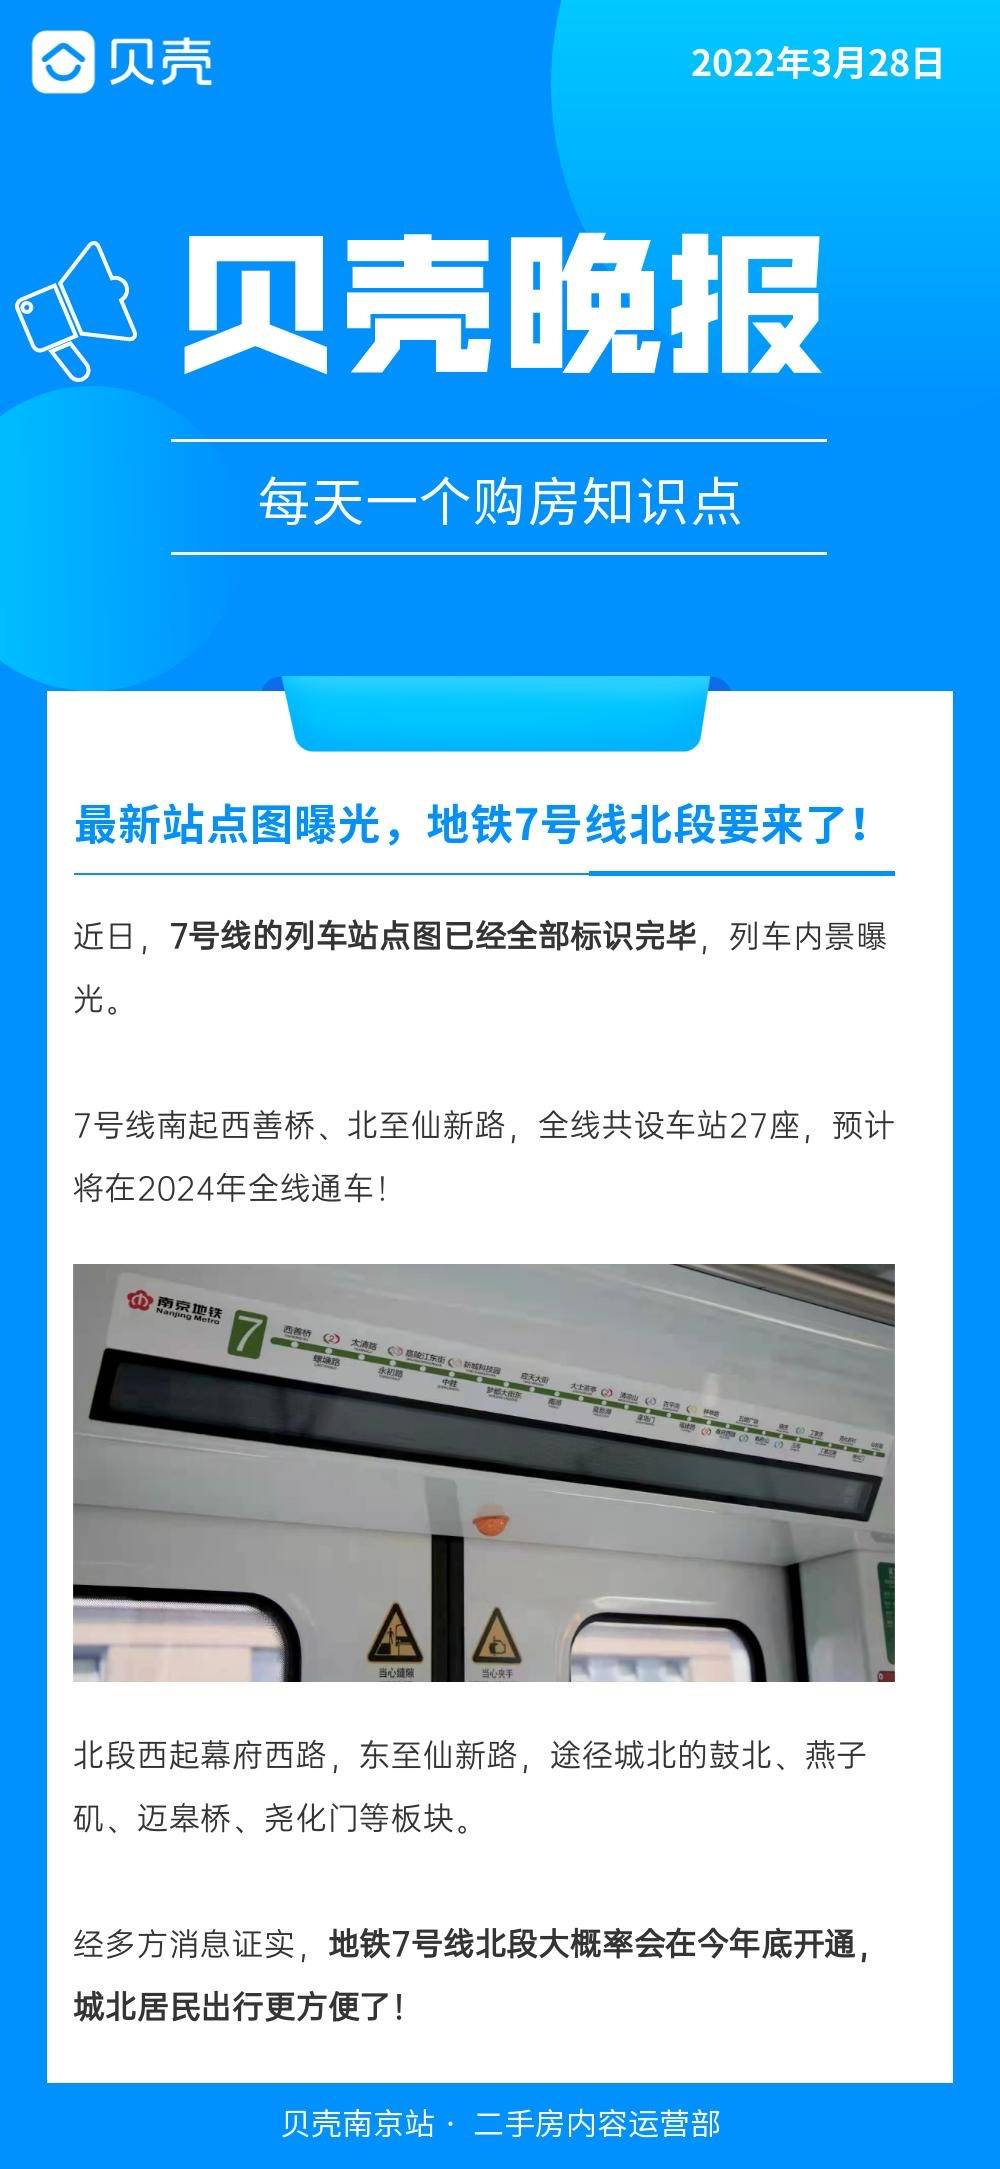 贝壳晚报最新站点图曝光南京地铁7号线北段要来了